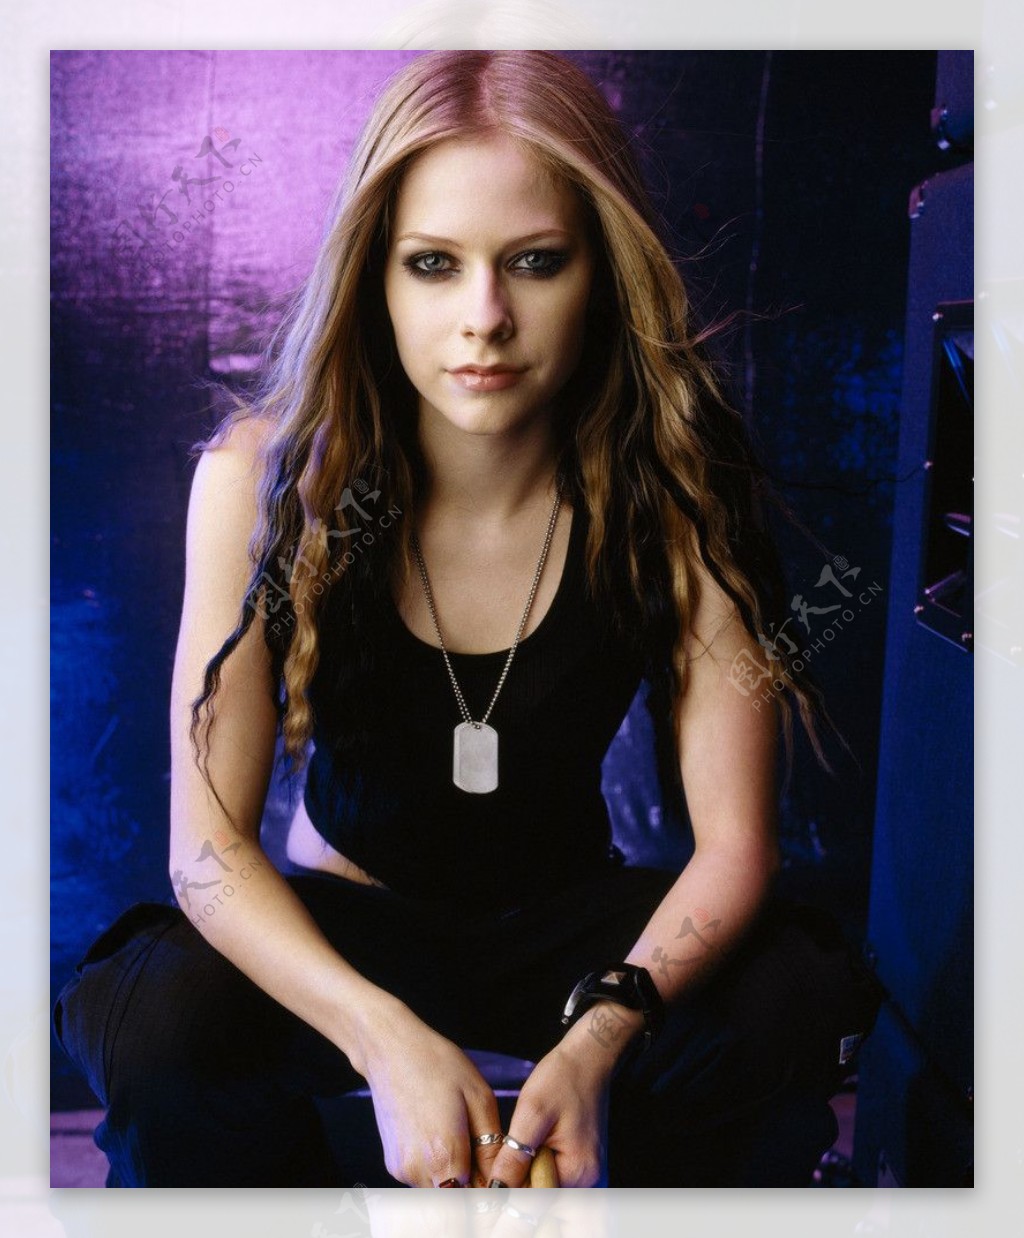 壁纸1280×1024艾薇儿 Avril Lavigne 壁纸146壁纸,艾薇儿 Avril Lavigne壁纸图片-明星壁纸-明星图片素材-桌面壁纸